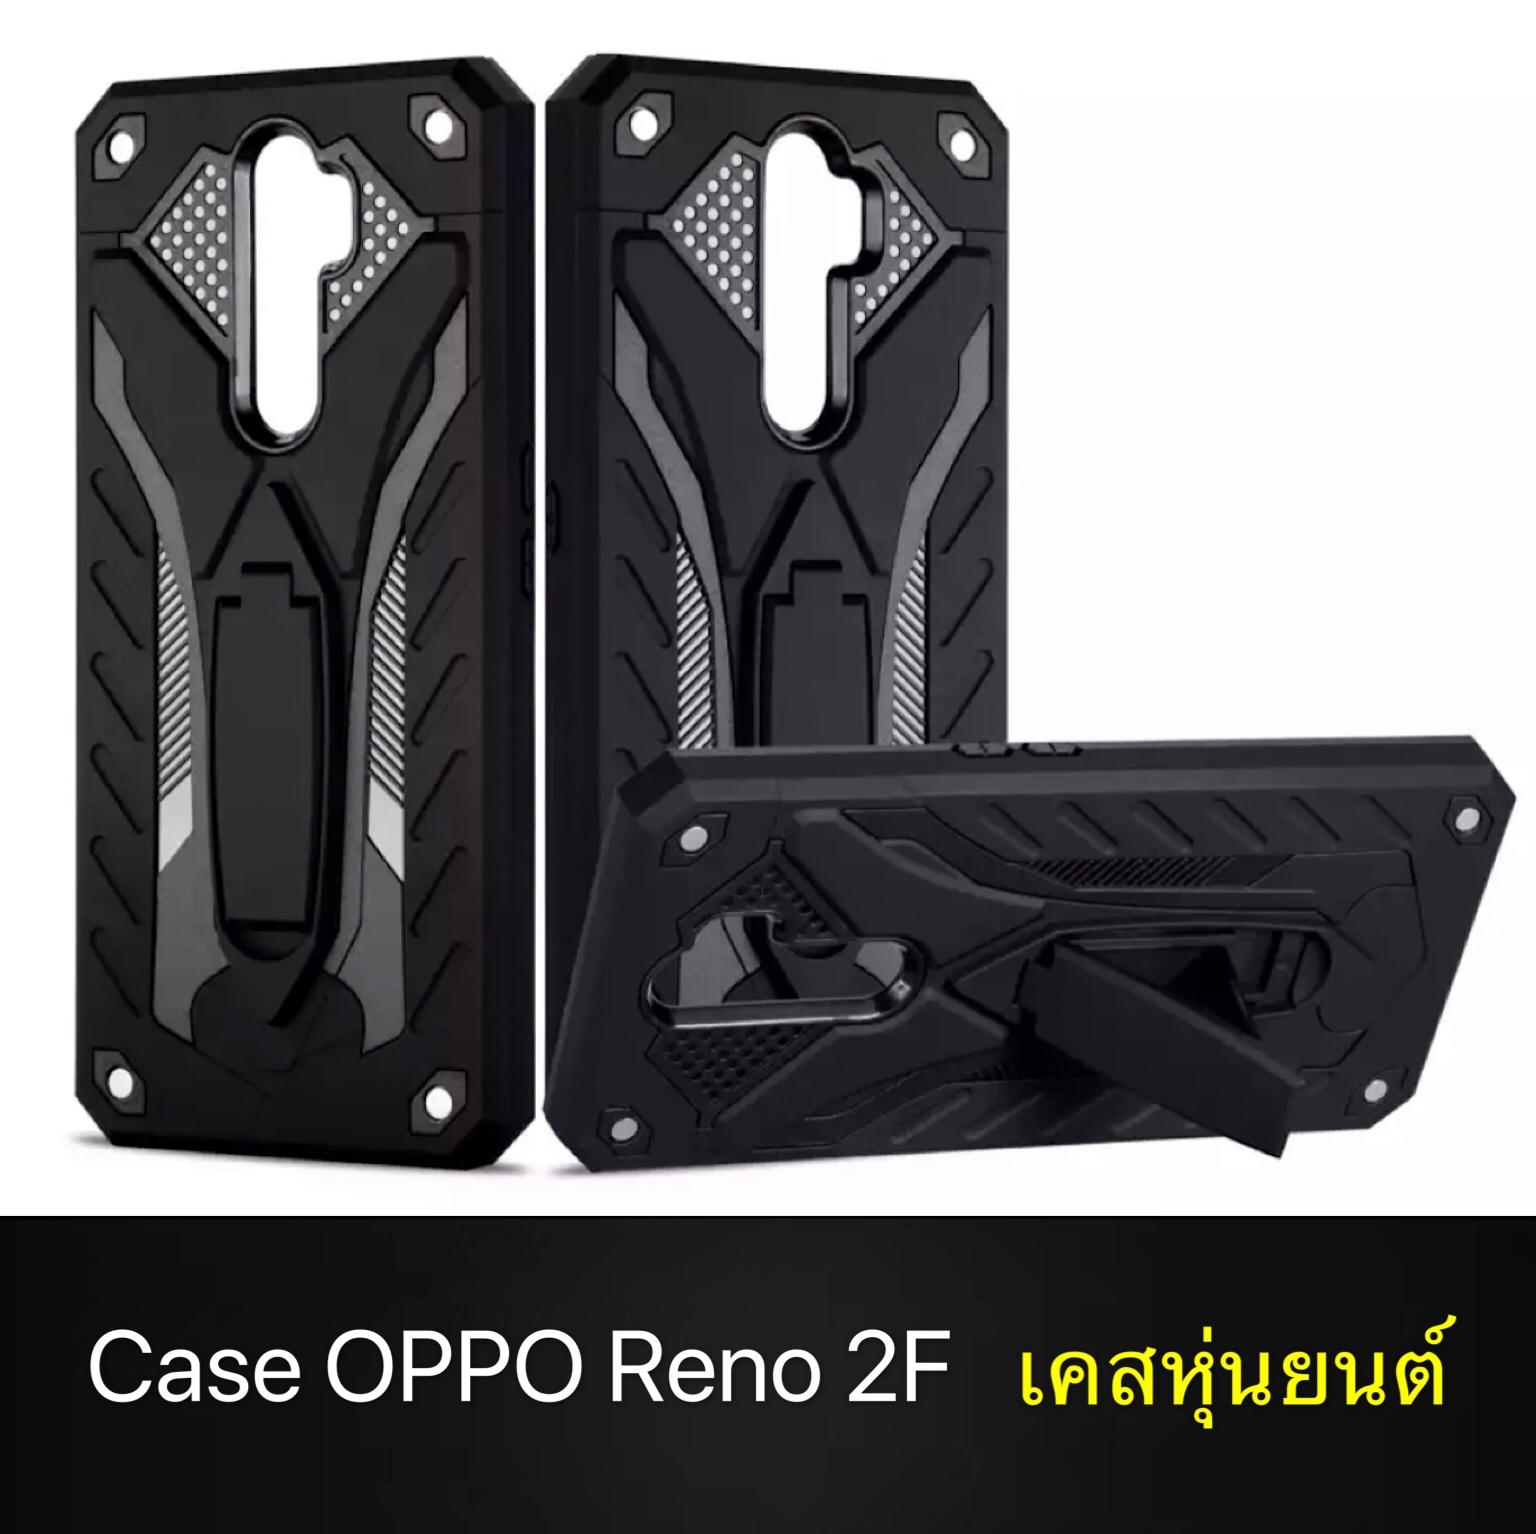 [สินค้าขายดี] Case OPPO Reno2F เคสออฟโป้ เคสหุ่นยนต์ เคส Oppo Reno 2F เคสไฮบริด มีขาตั้ง เคสกันกระแทก สินค้าใหม่ TPU CASE